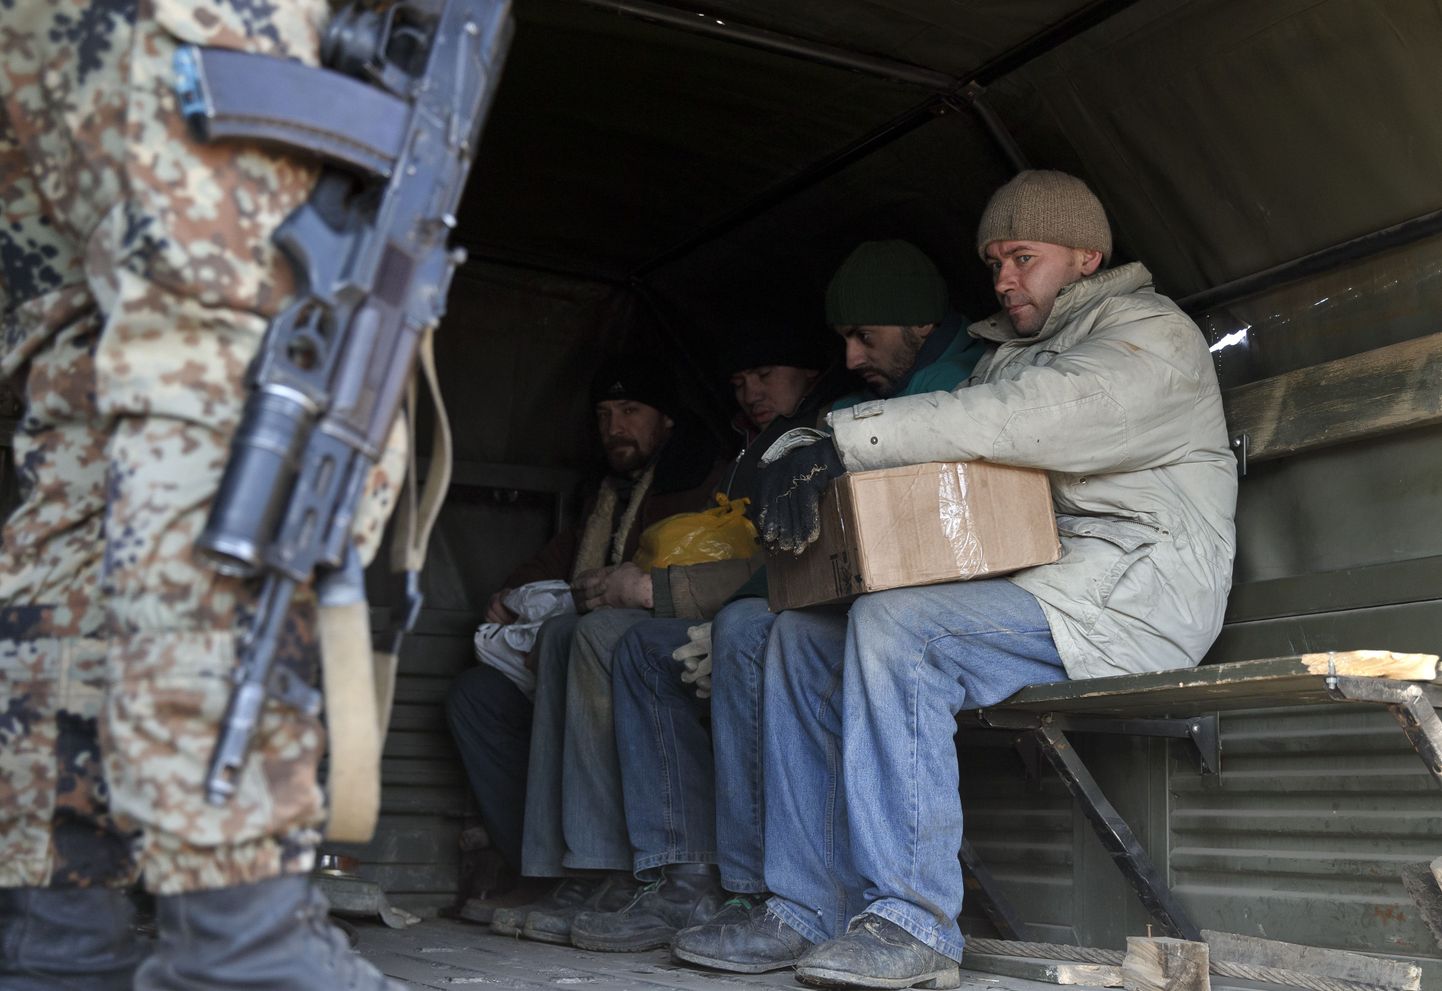 Venemaa toetatud Ida-Ukraina separatist ja ukrainlastest sõjavangid